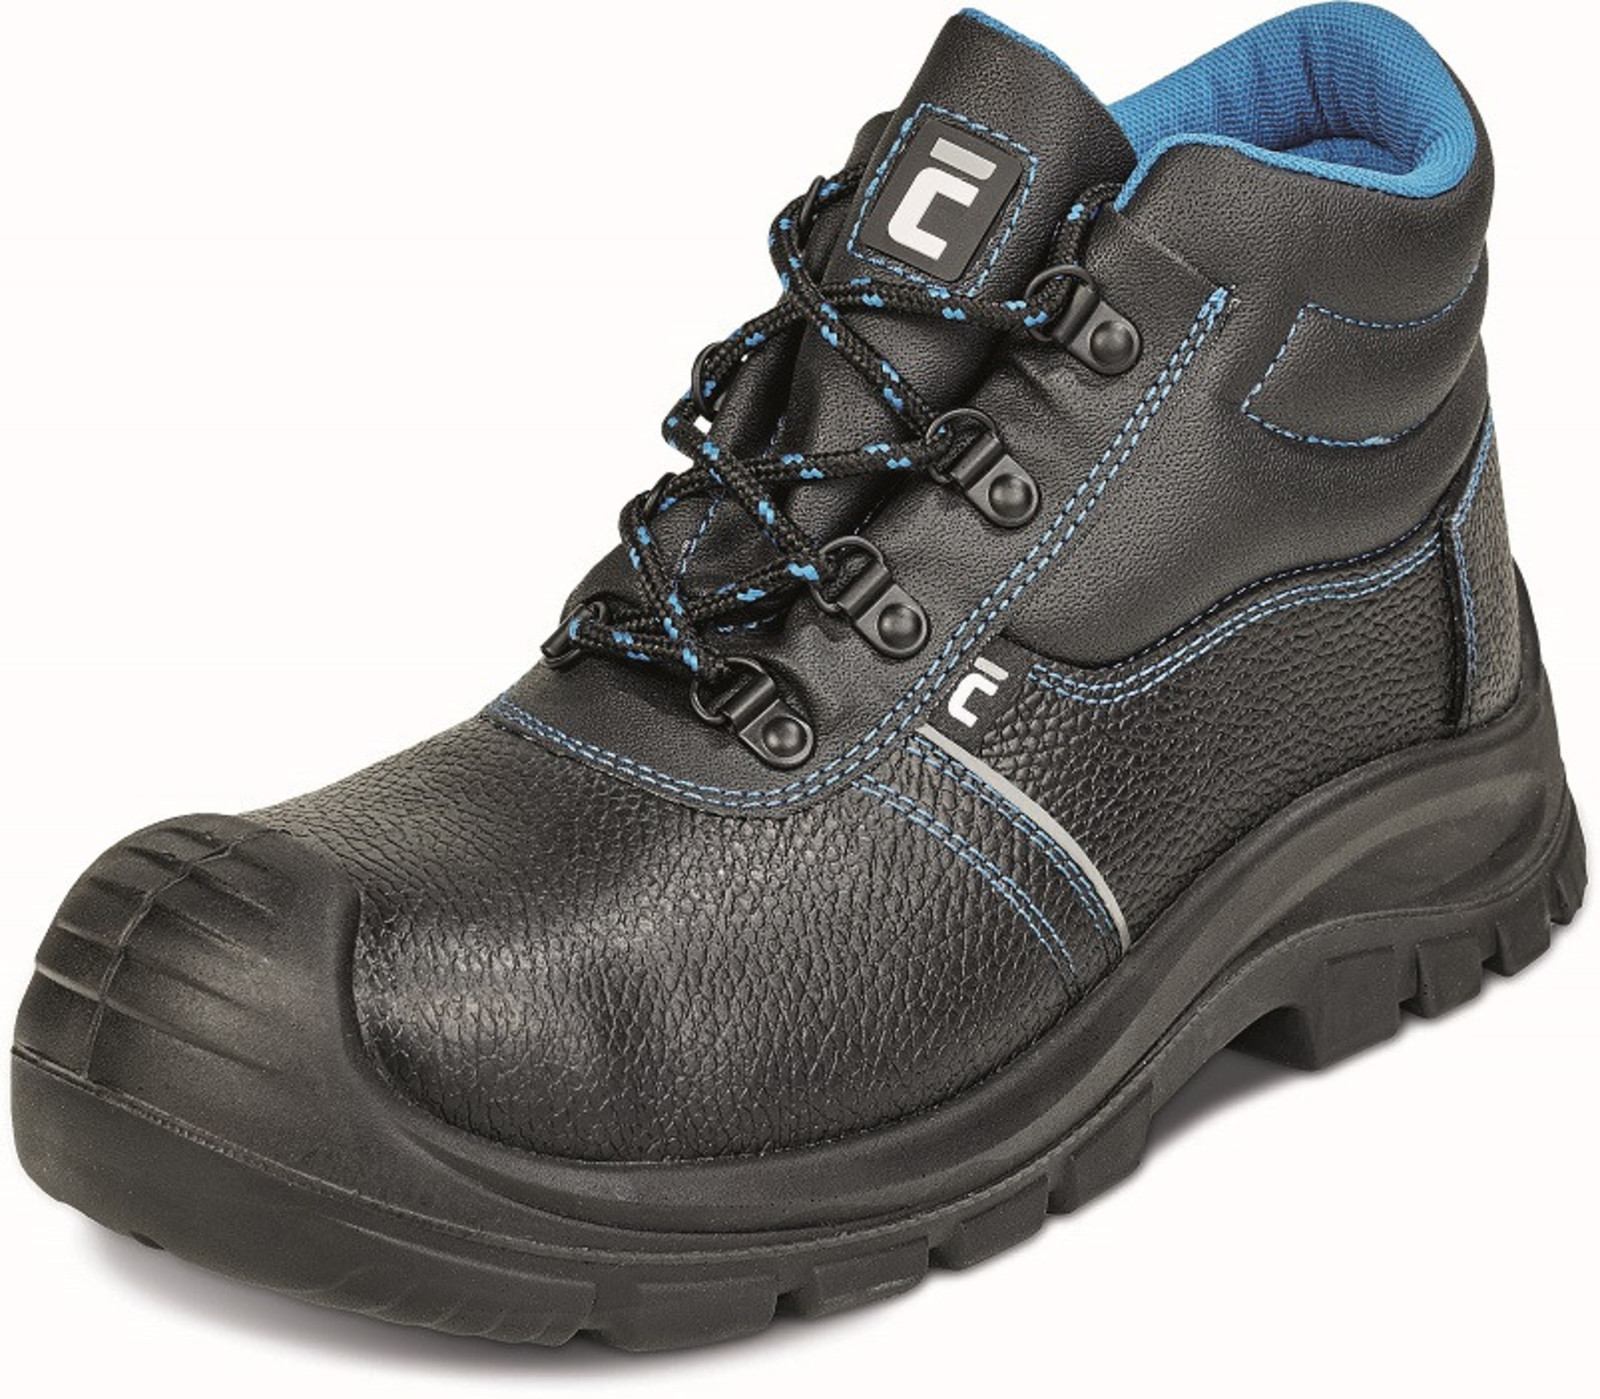 Bezpečnostná obuv Raven XT S3 - veľkosť: 48, farba: čierna